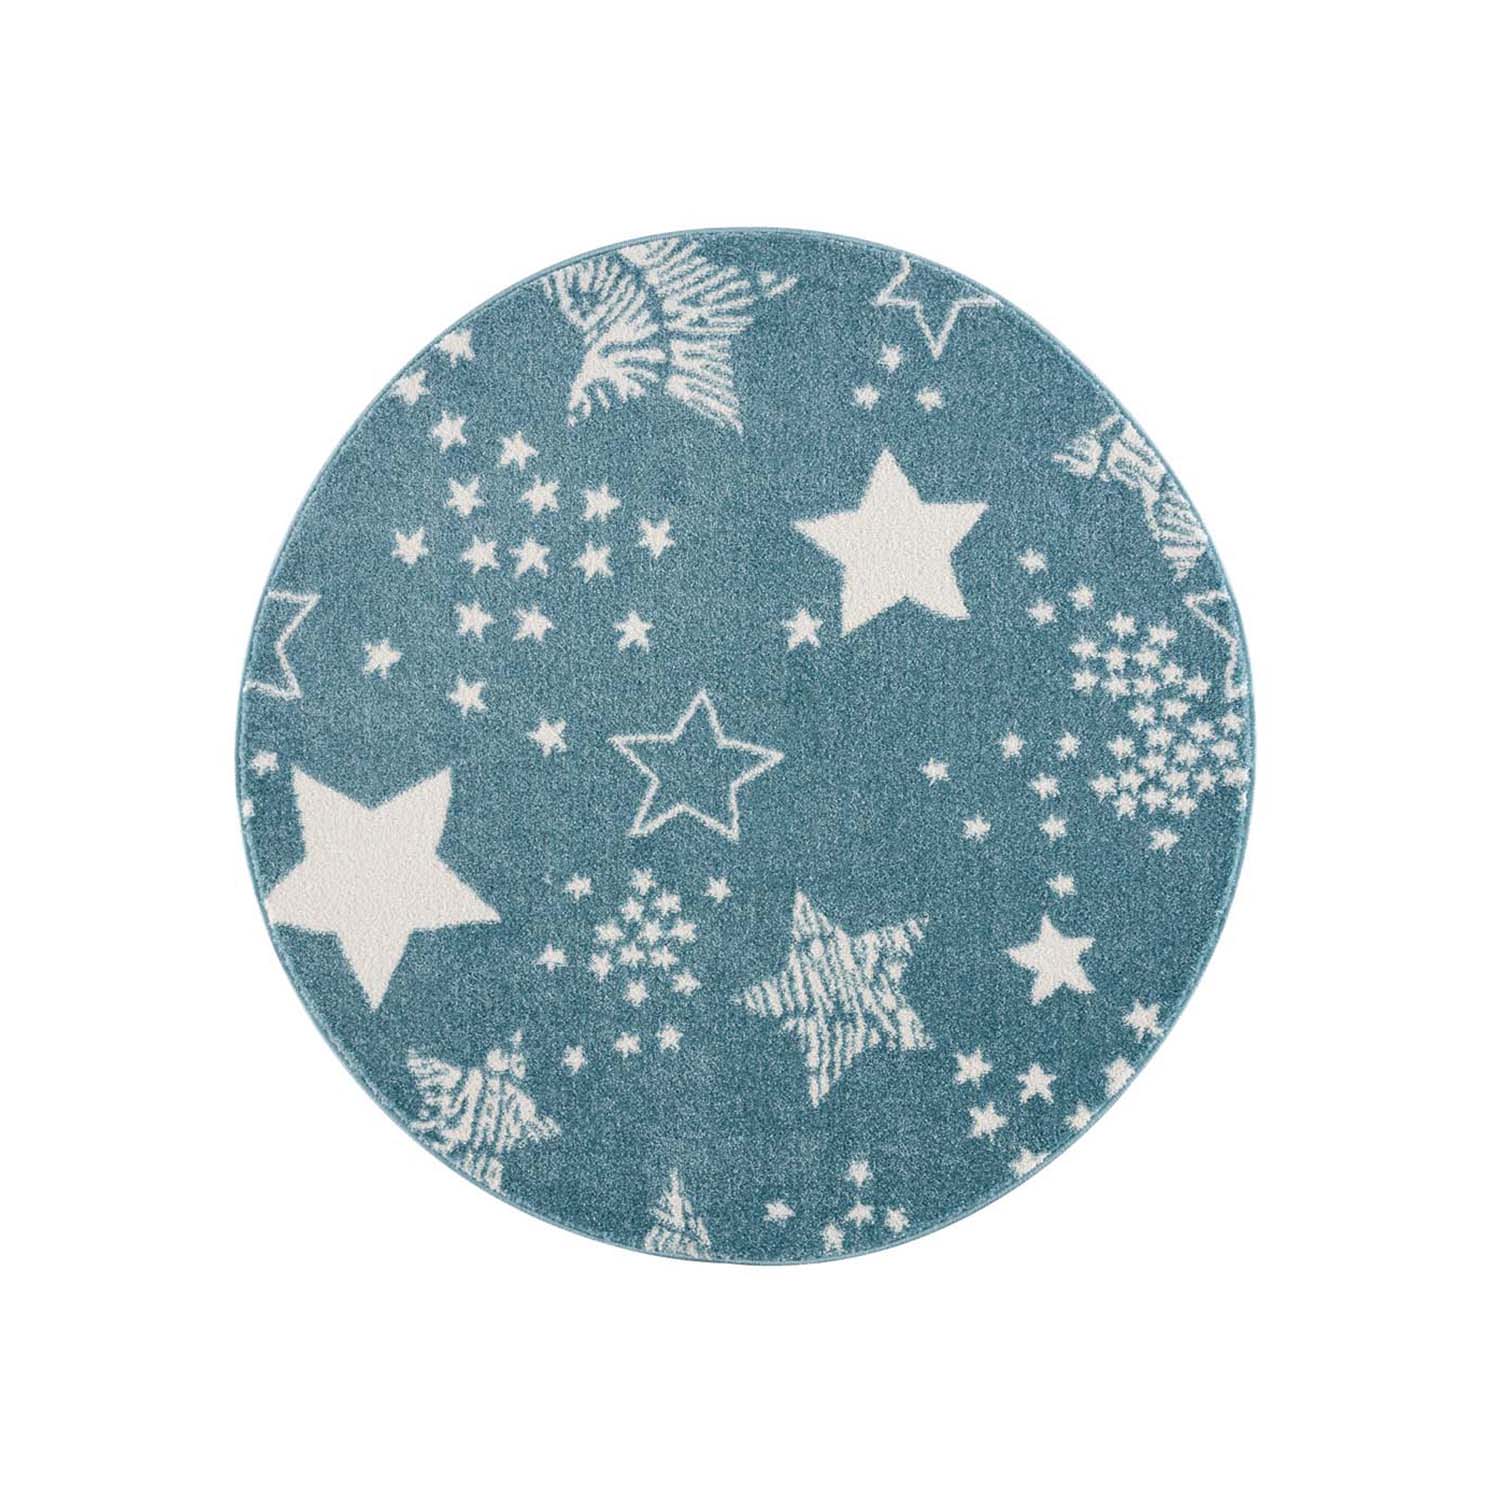 Detský okrúhly koberec ANIME - vzor 9387 Modré hviezdy